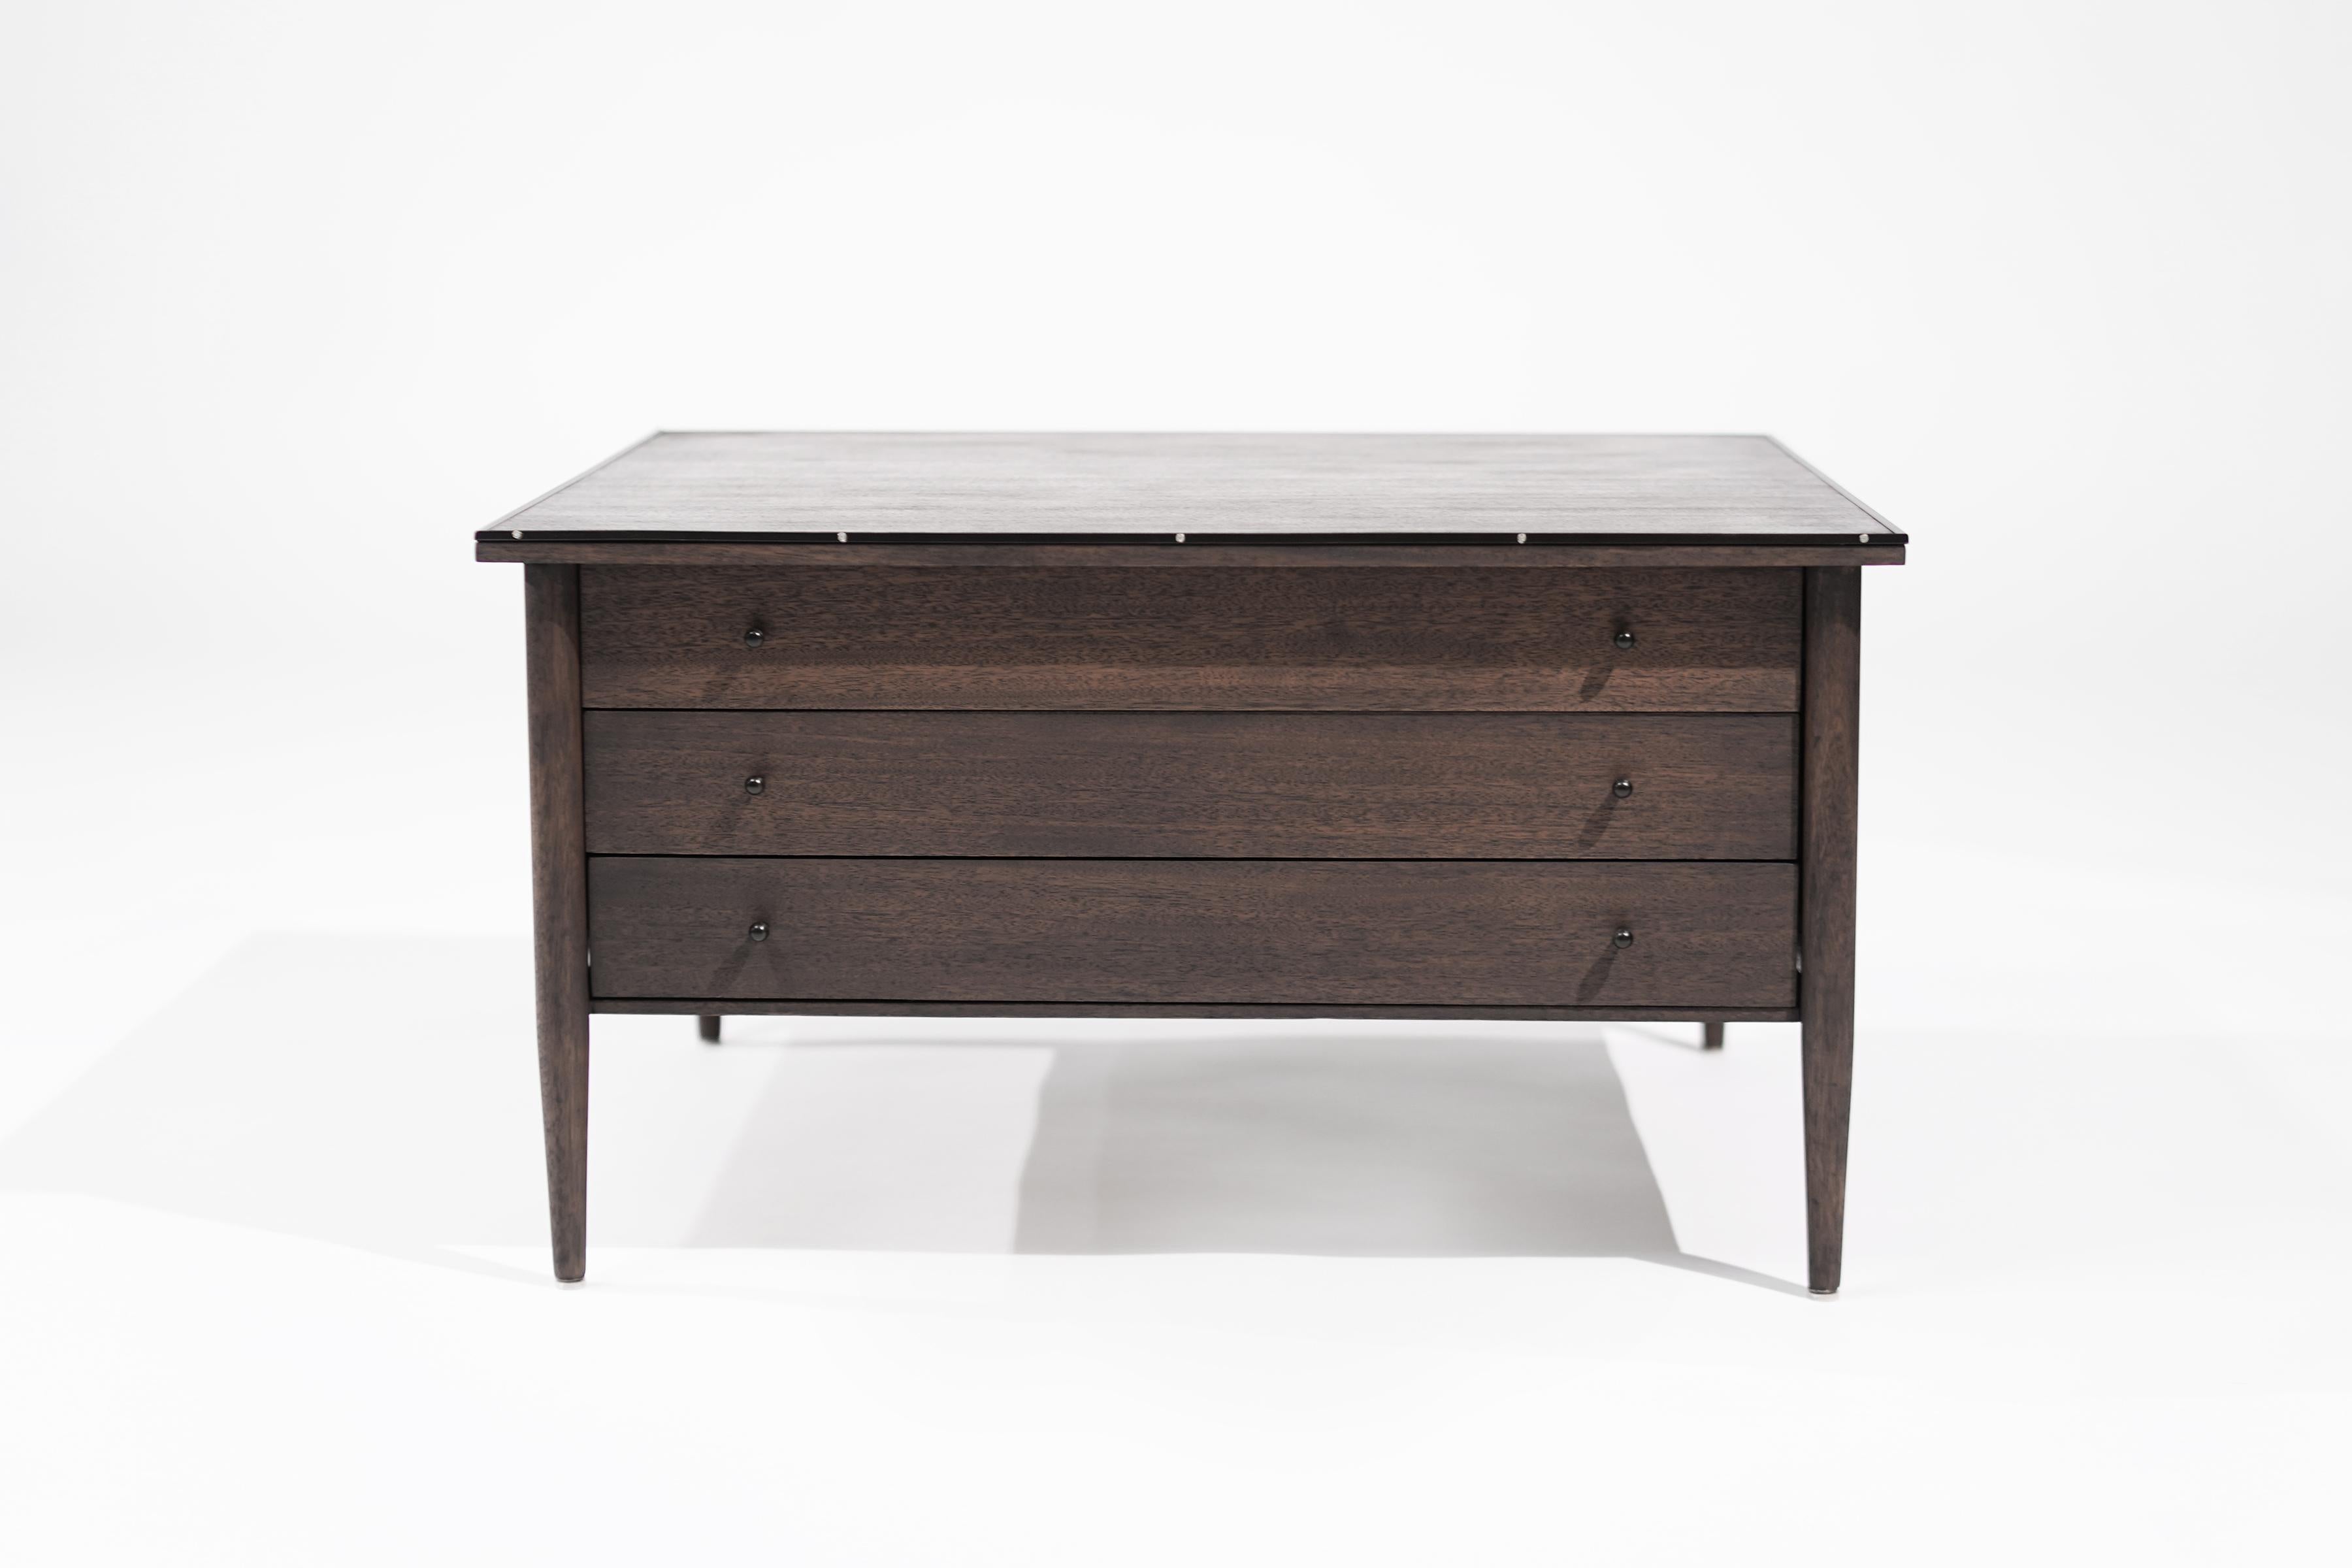 Exceptionnelle table basse vintage de la Collection S par Paul McCobb, fabriquée dans les années 1950. Méticuleusement façonnée dans un acajou luxueux et rehaussée de notre finition mate organique zéro COV (sans composés organiques volatils), cette